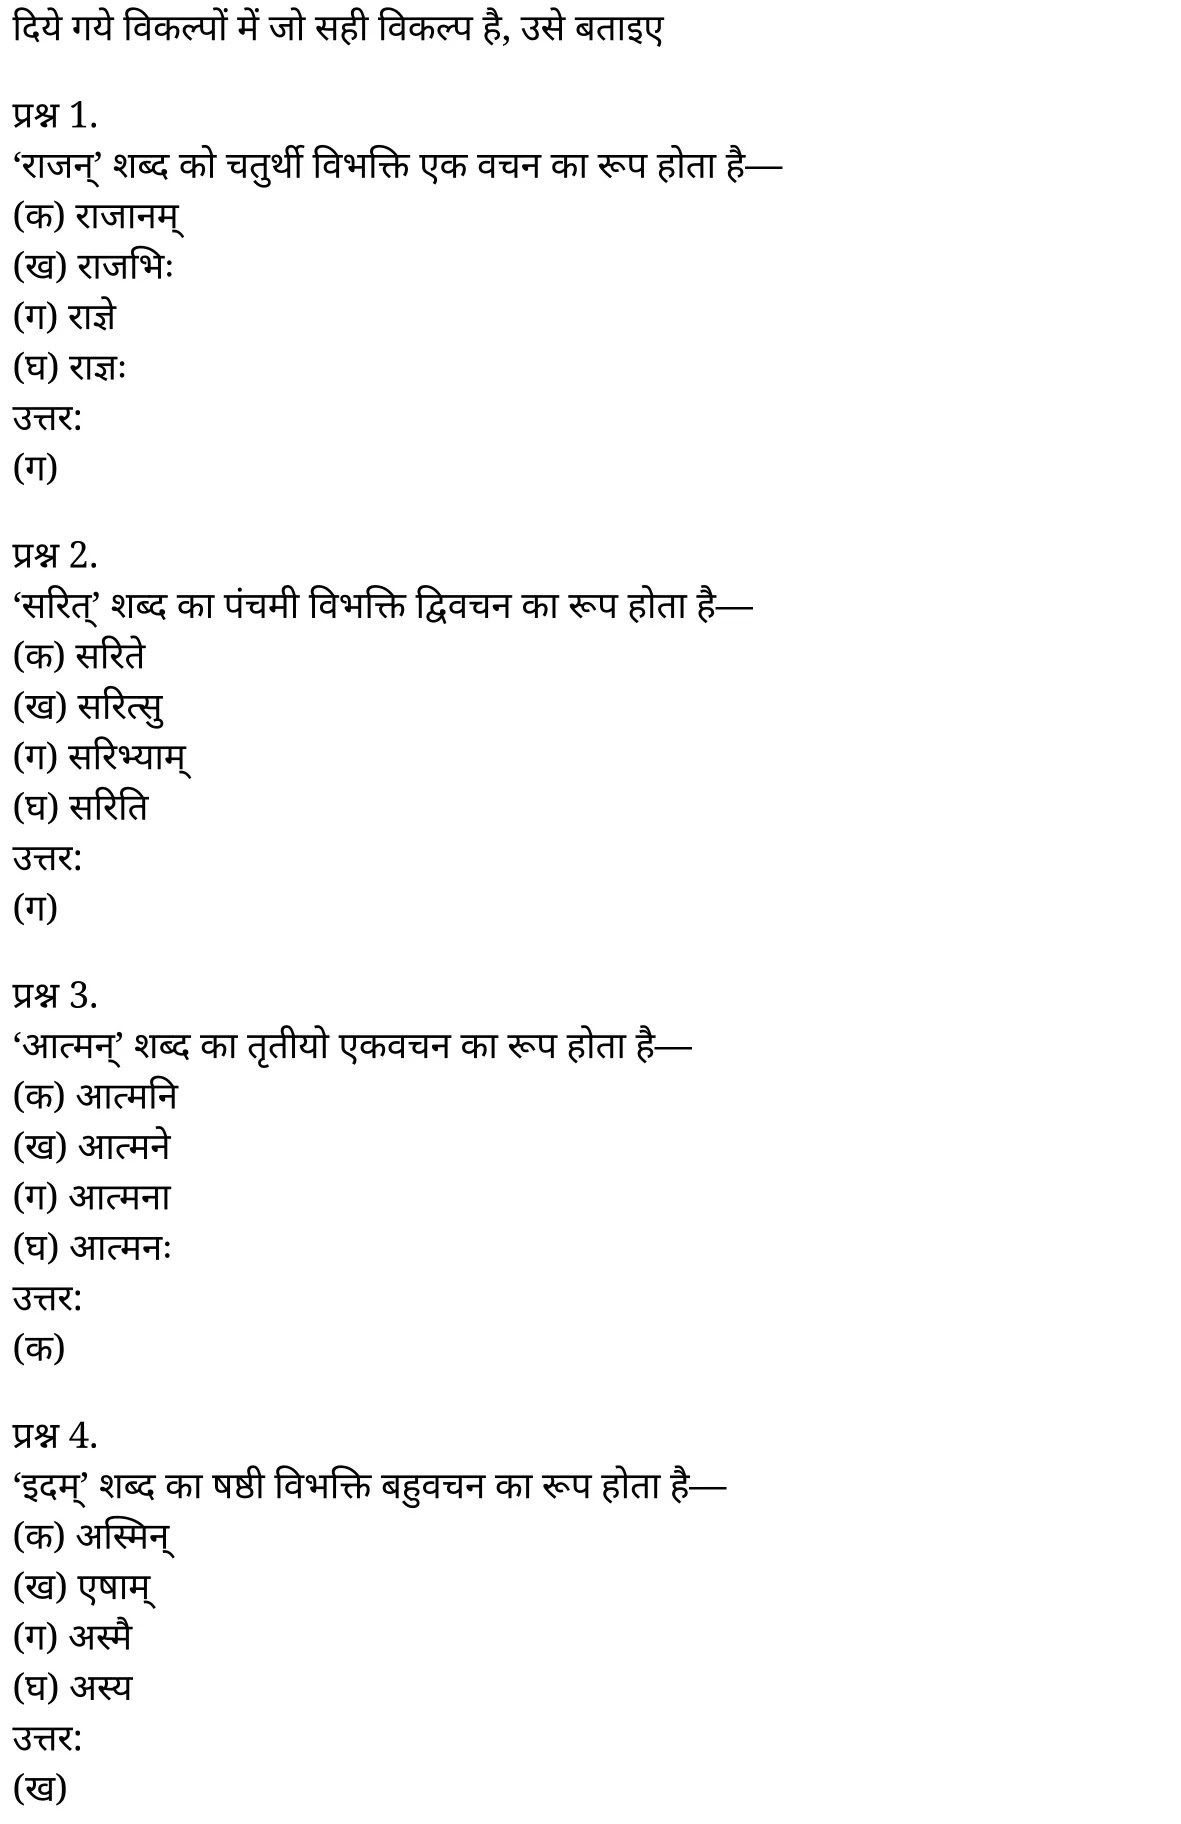 यूपी बोर्ड एनसीईआरटी समाधान "कक्षा 11 सामान्य  हिंदी" संस्कृत शब्दों में विभक्ति की पहचान  हिंदी में